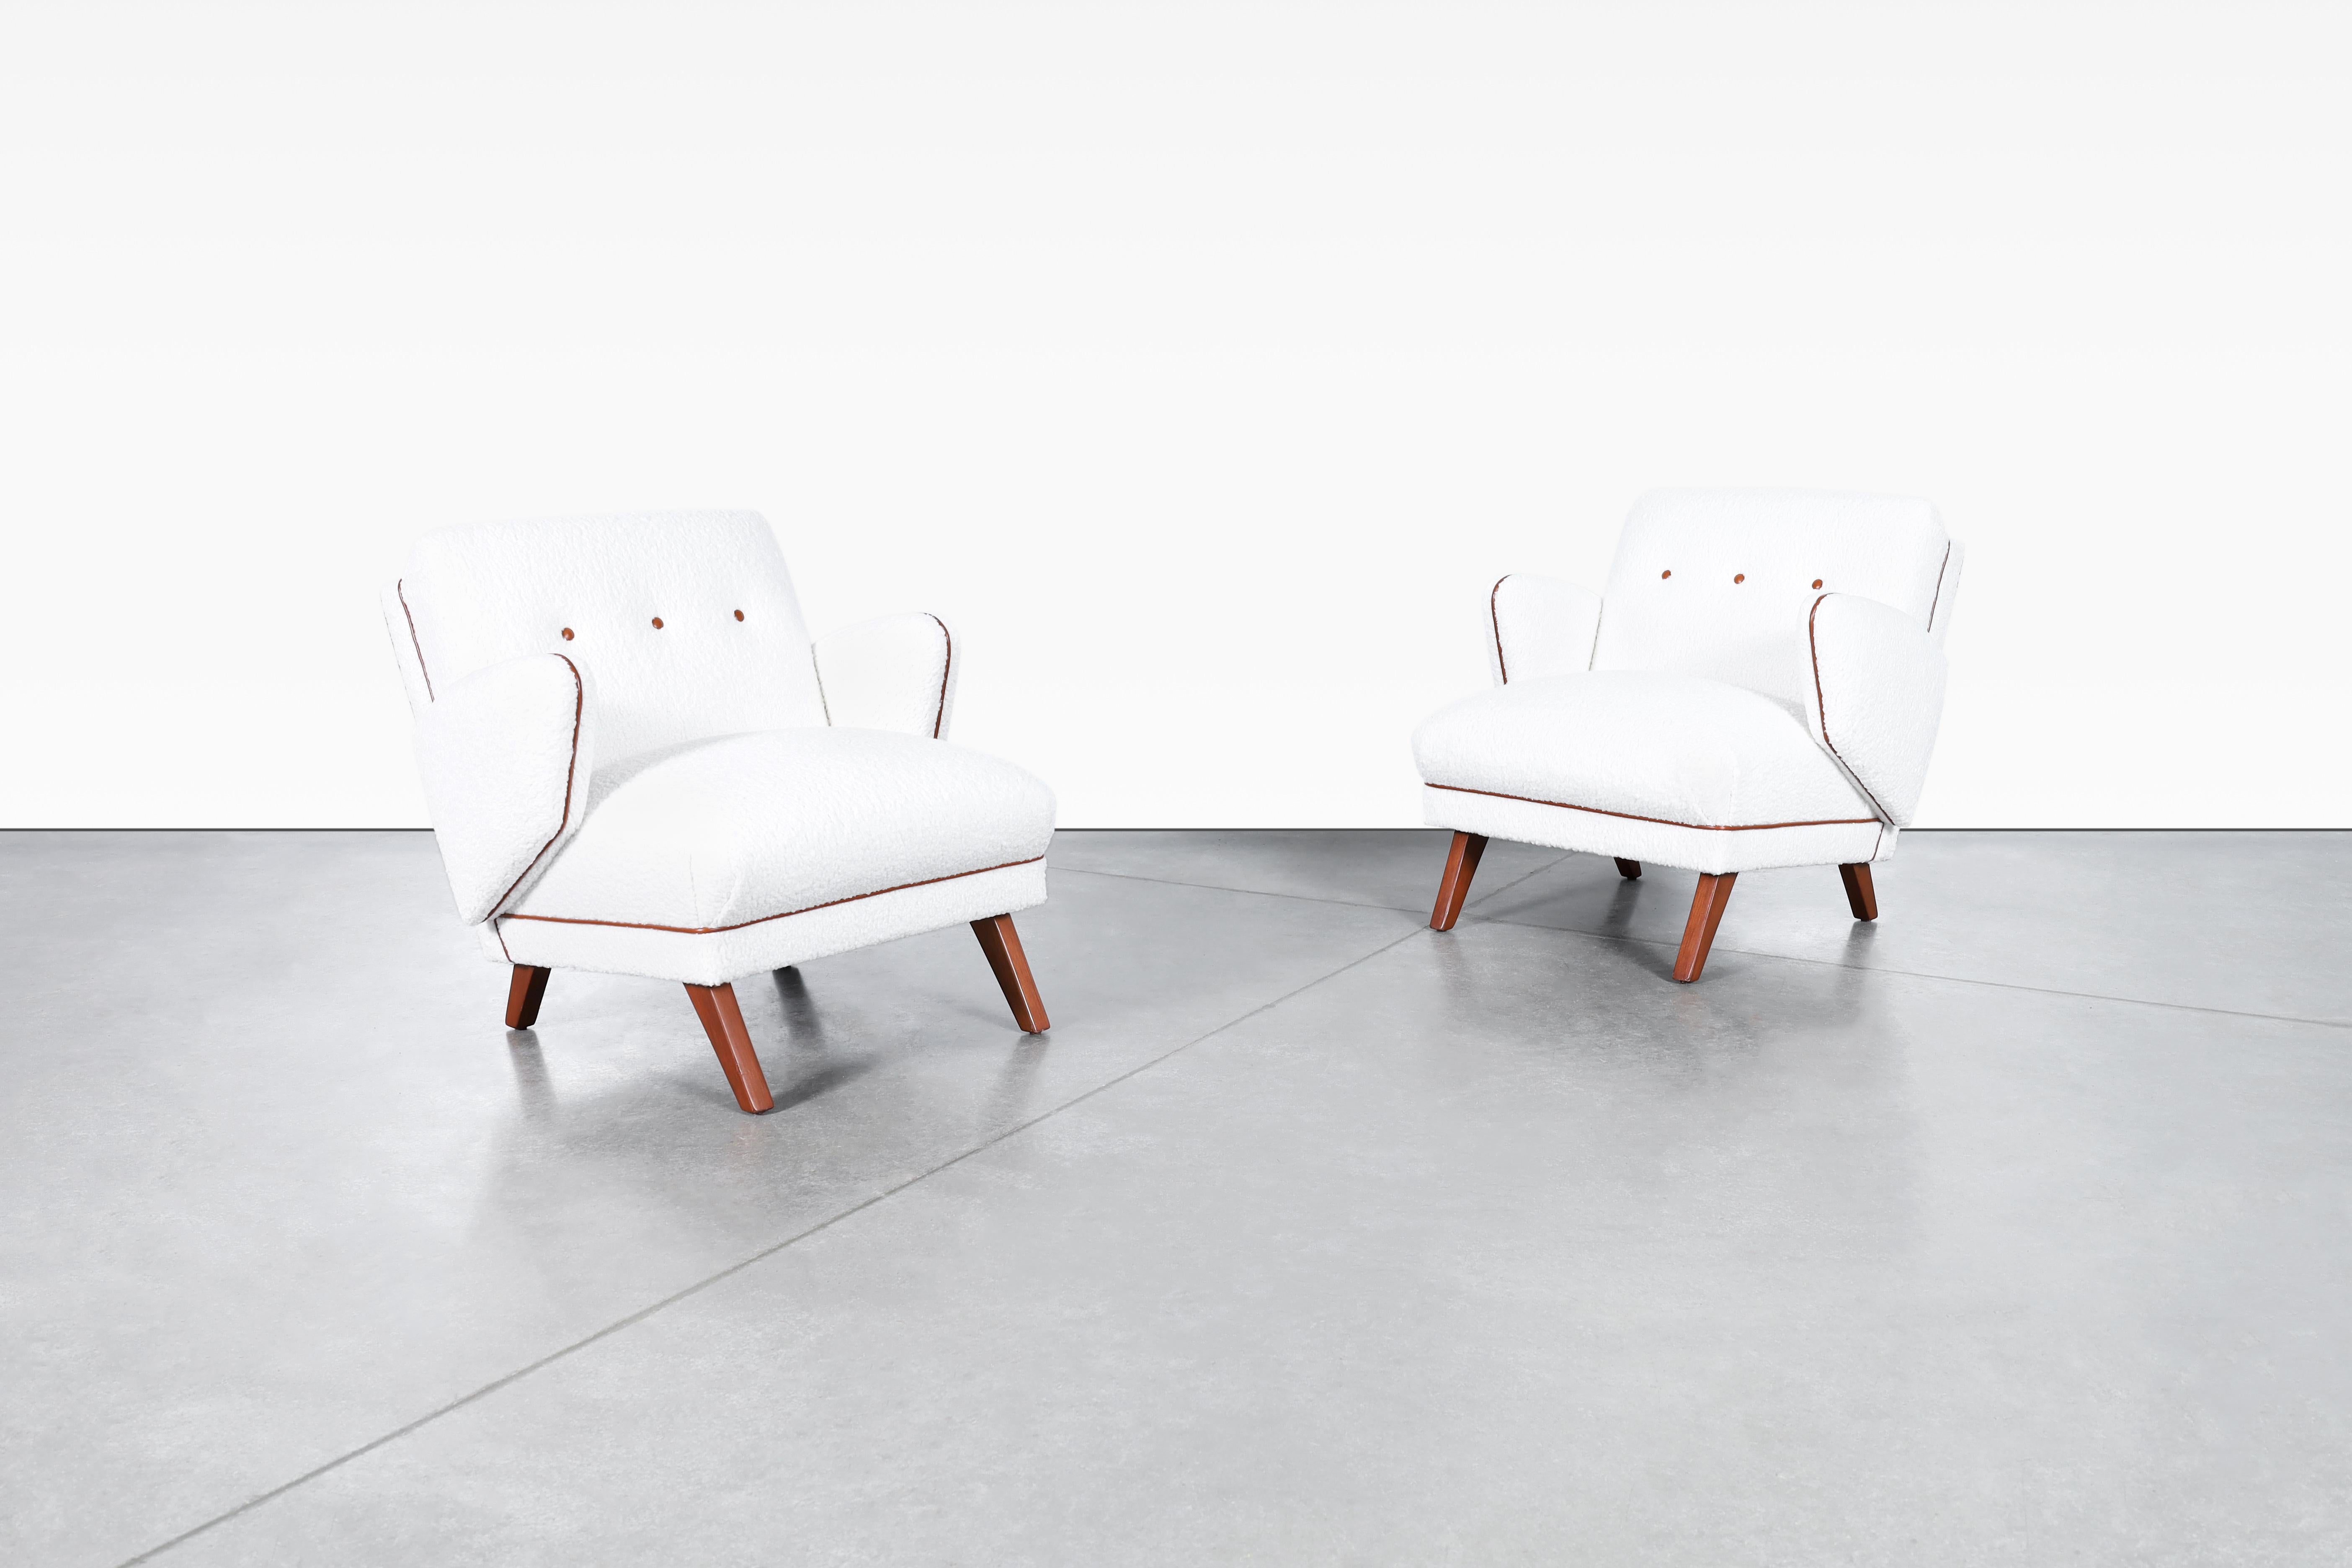 Ces chaises longues modernes du milieu du siècle sont un véritable chef-d'œuvre d'artisanat et de design. Produites aux États-Unis dans les années 1950, elles ont été professionnellement restaurées pour leur donner une nouvelle vie. Les chaises sont